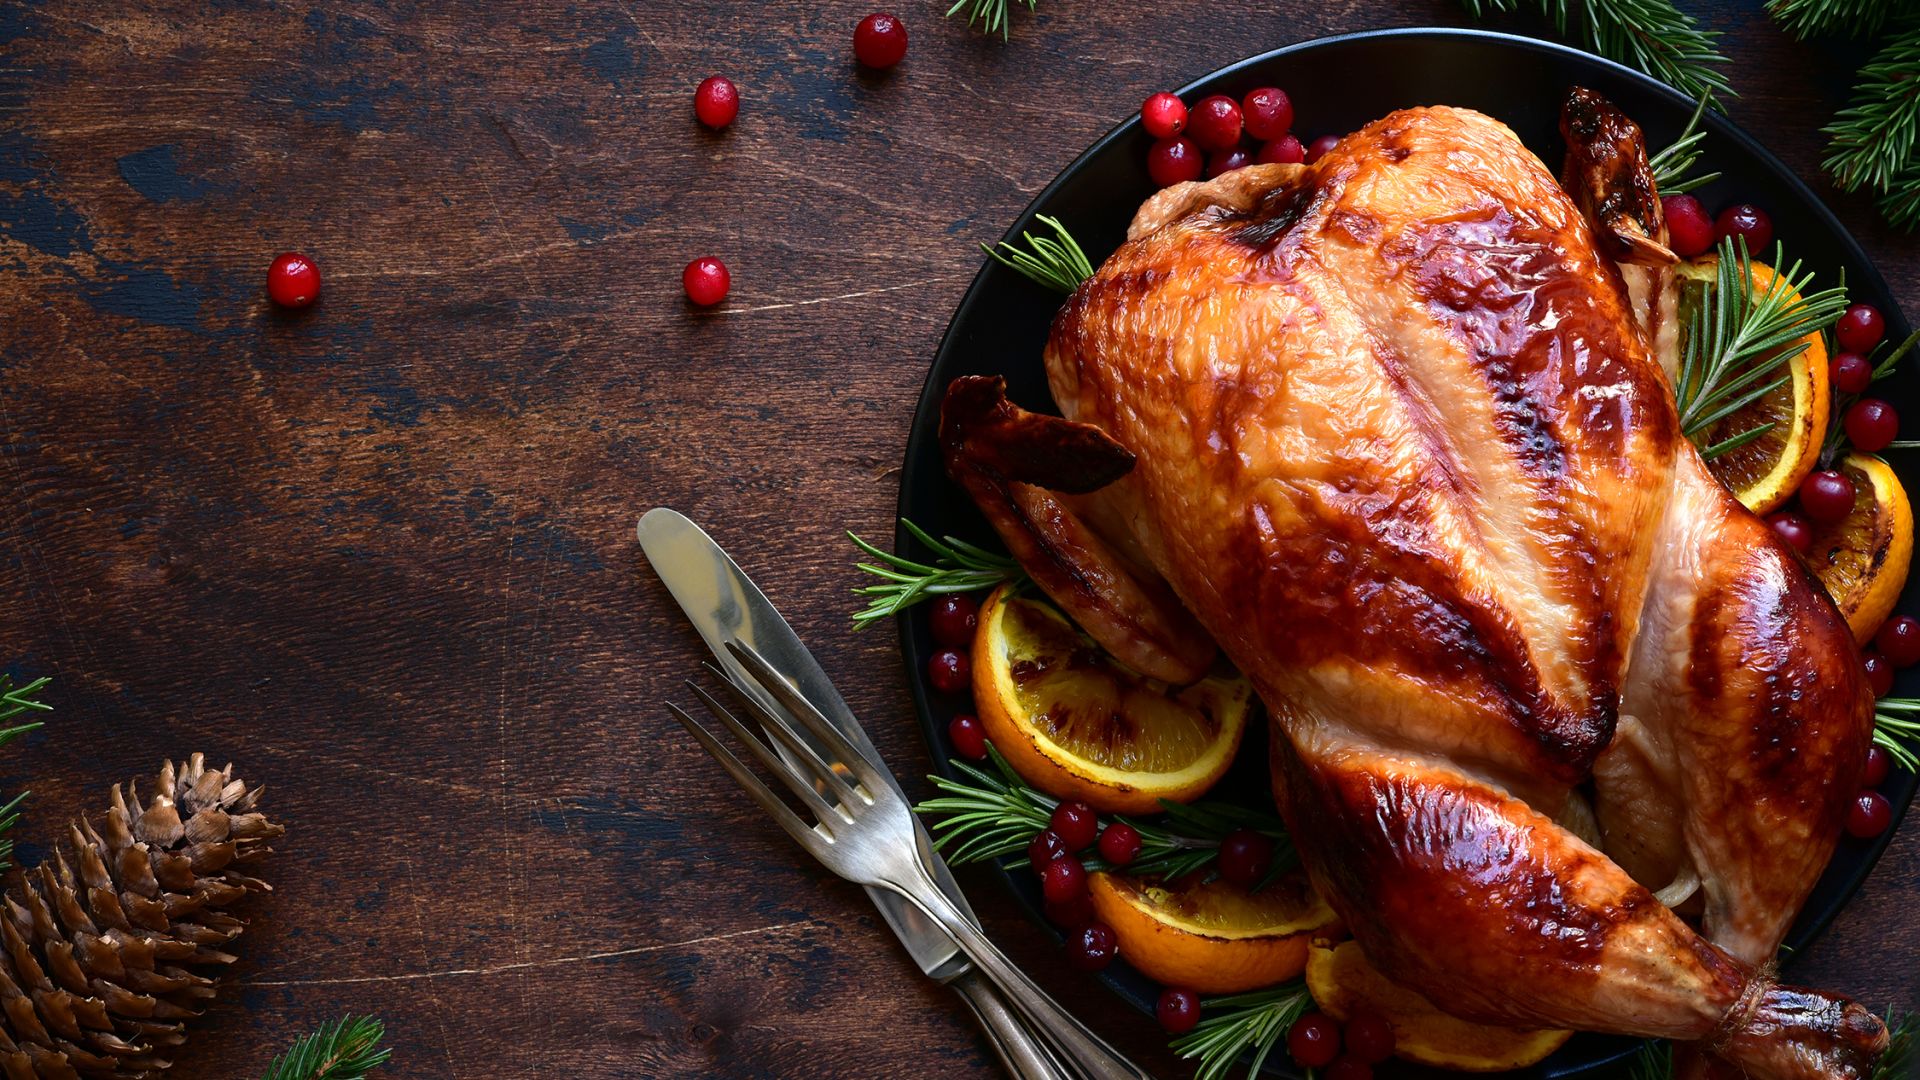 A Roasted Turkey On A Plate